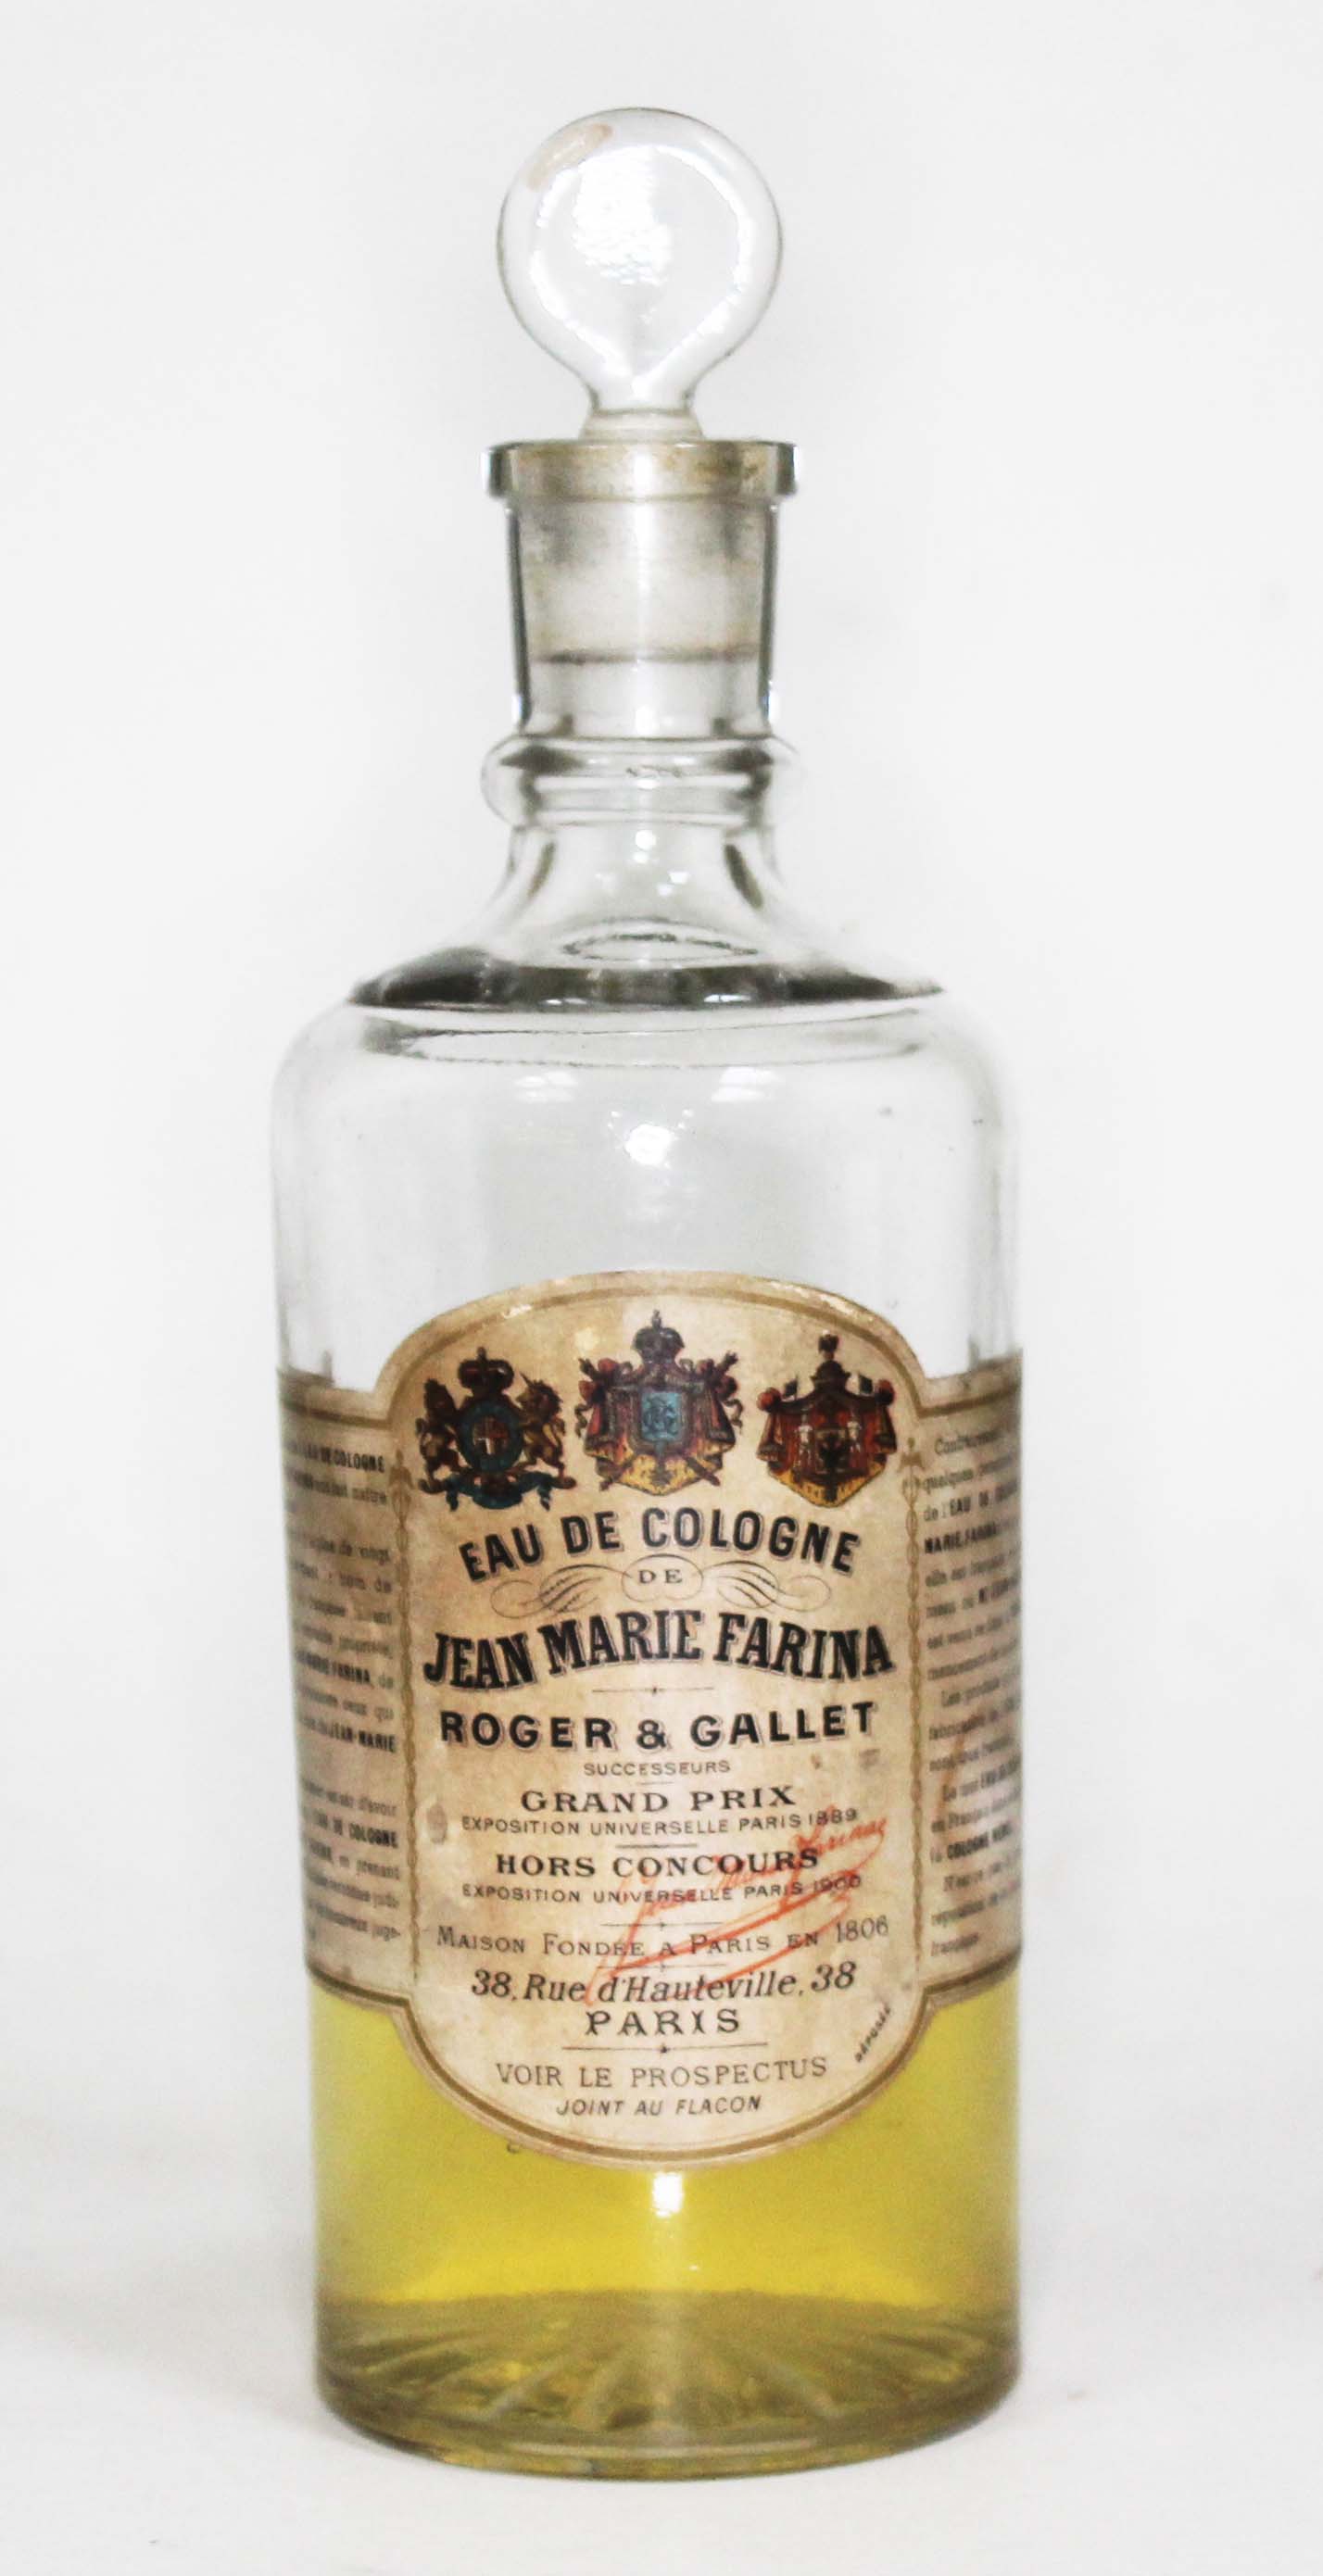 An antique bottle of Jean Marie Farina Roger & Gallet eau du cologne.